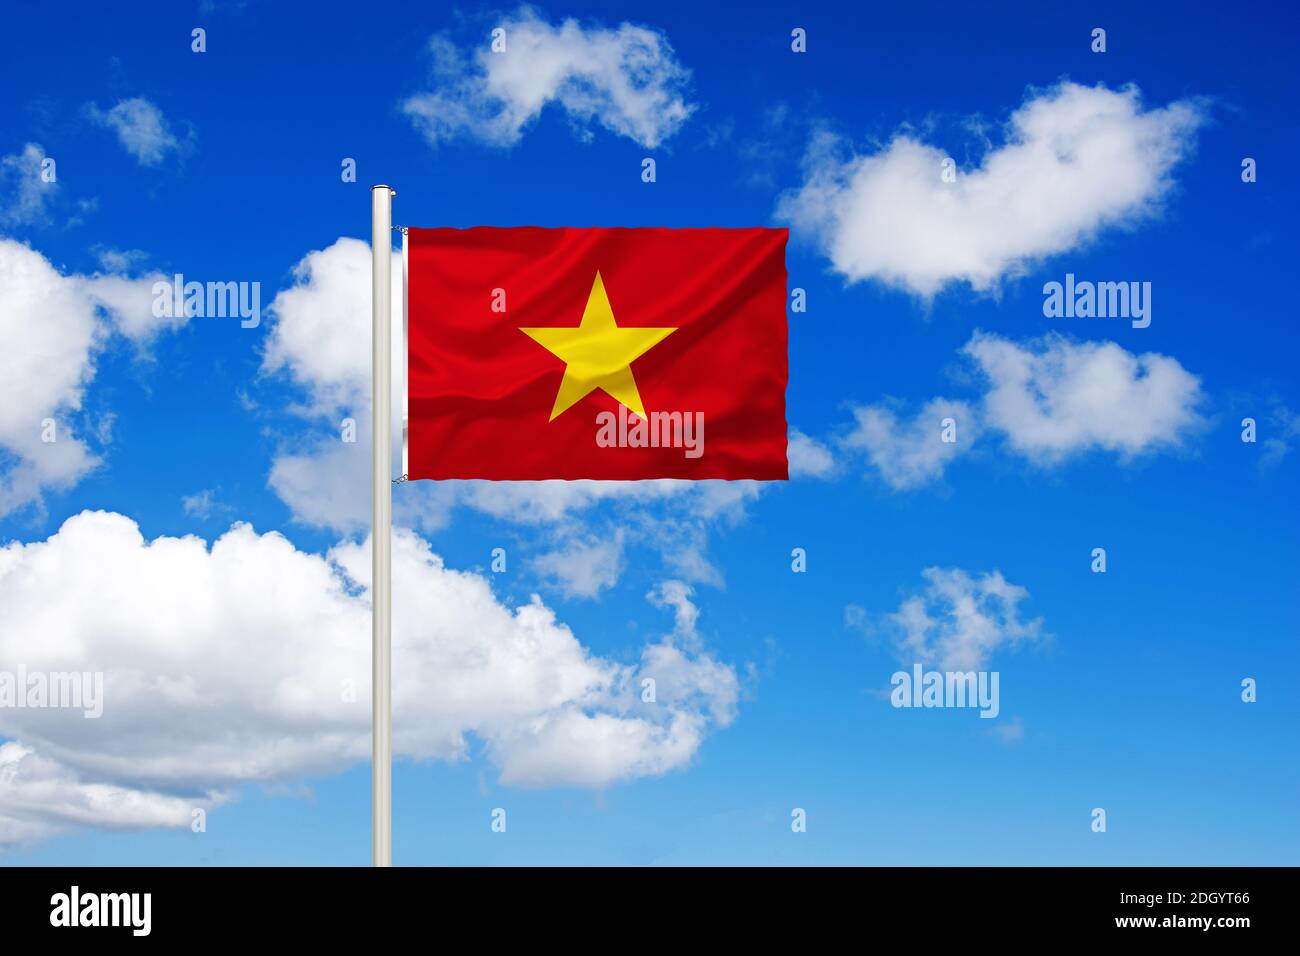 Nationalfahne, Nationalflagge, Fahne, Flagge, Flaggenmast, Cumulus Wolken vor blauen Himmel, Stock Photo